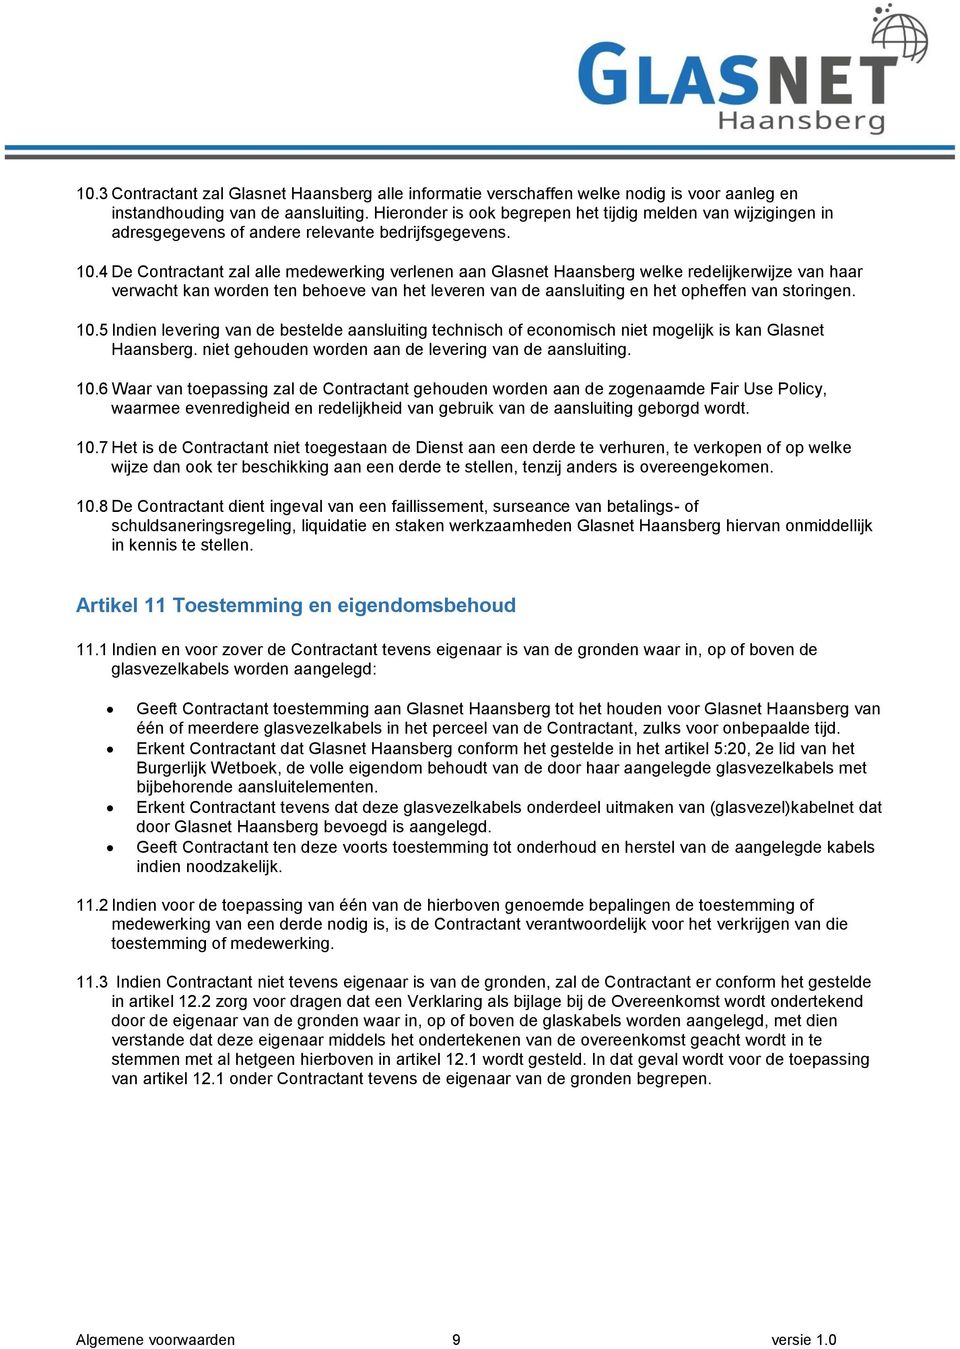 4 De Contractant zal alle medewerking verlenen aan Glasnet Haansberg welke redelijkerwijze van haar verwacht kan worden ten behoeve van het leveren van de aansluiting en het opheffen van storingen.